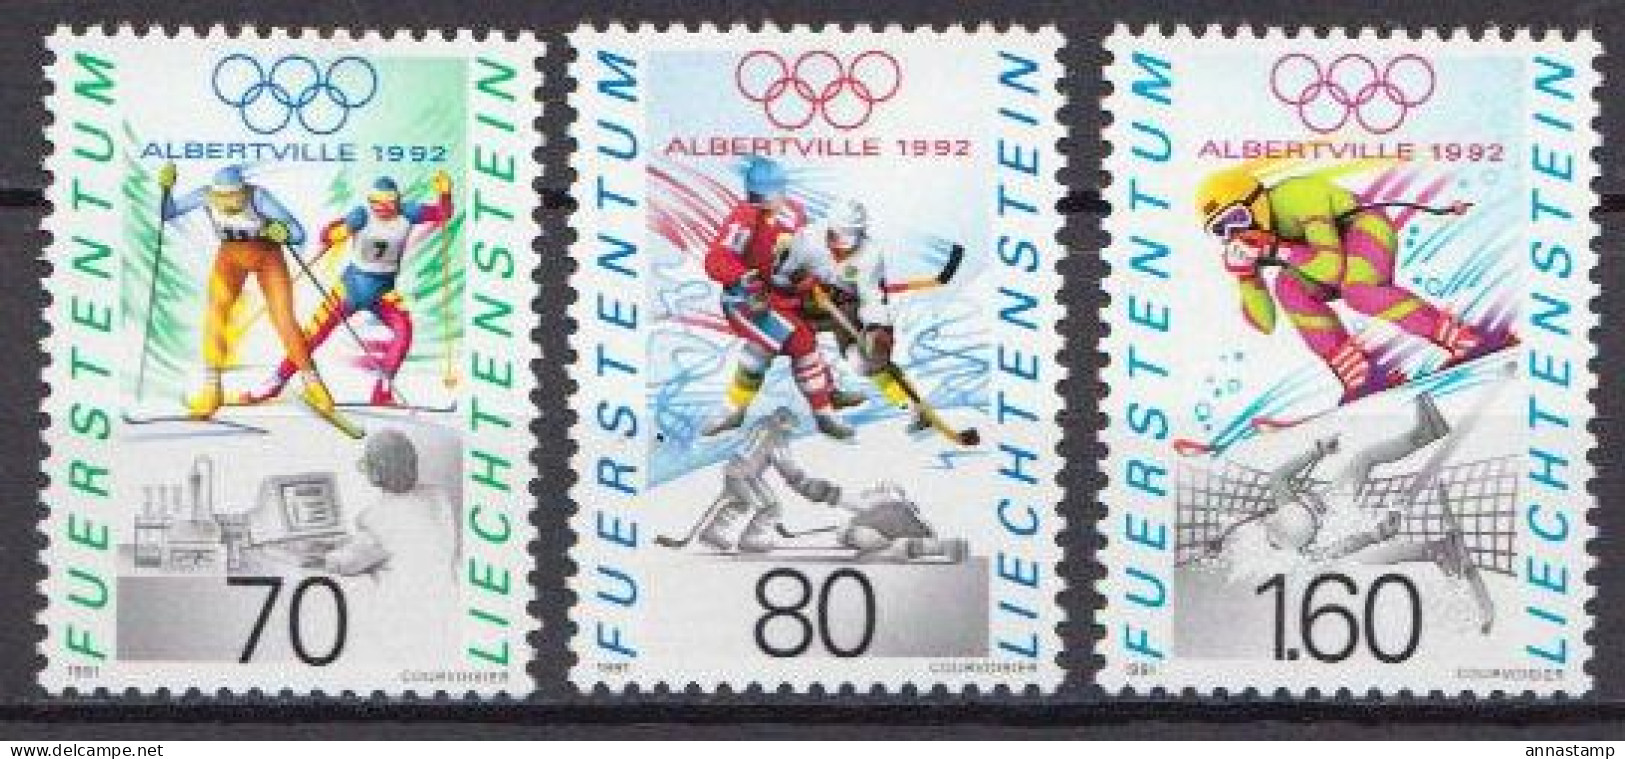 Liechtenstein MNH Set - Inverno1992: Albertville